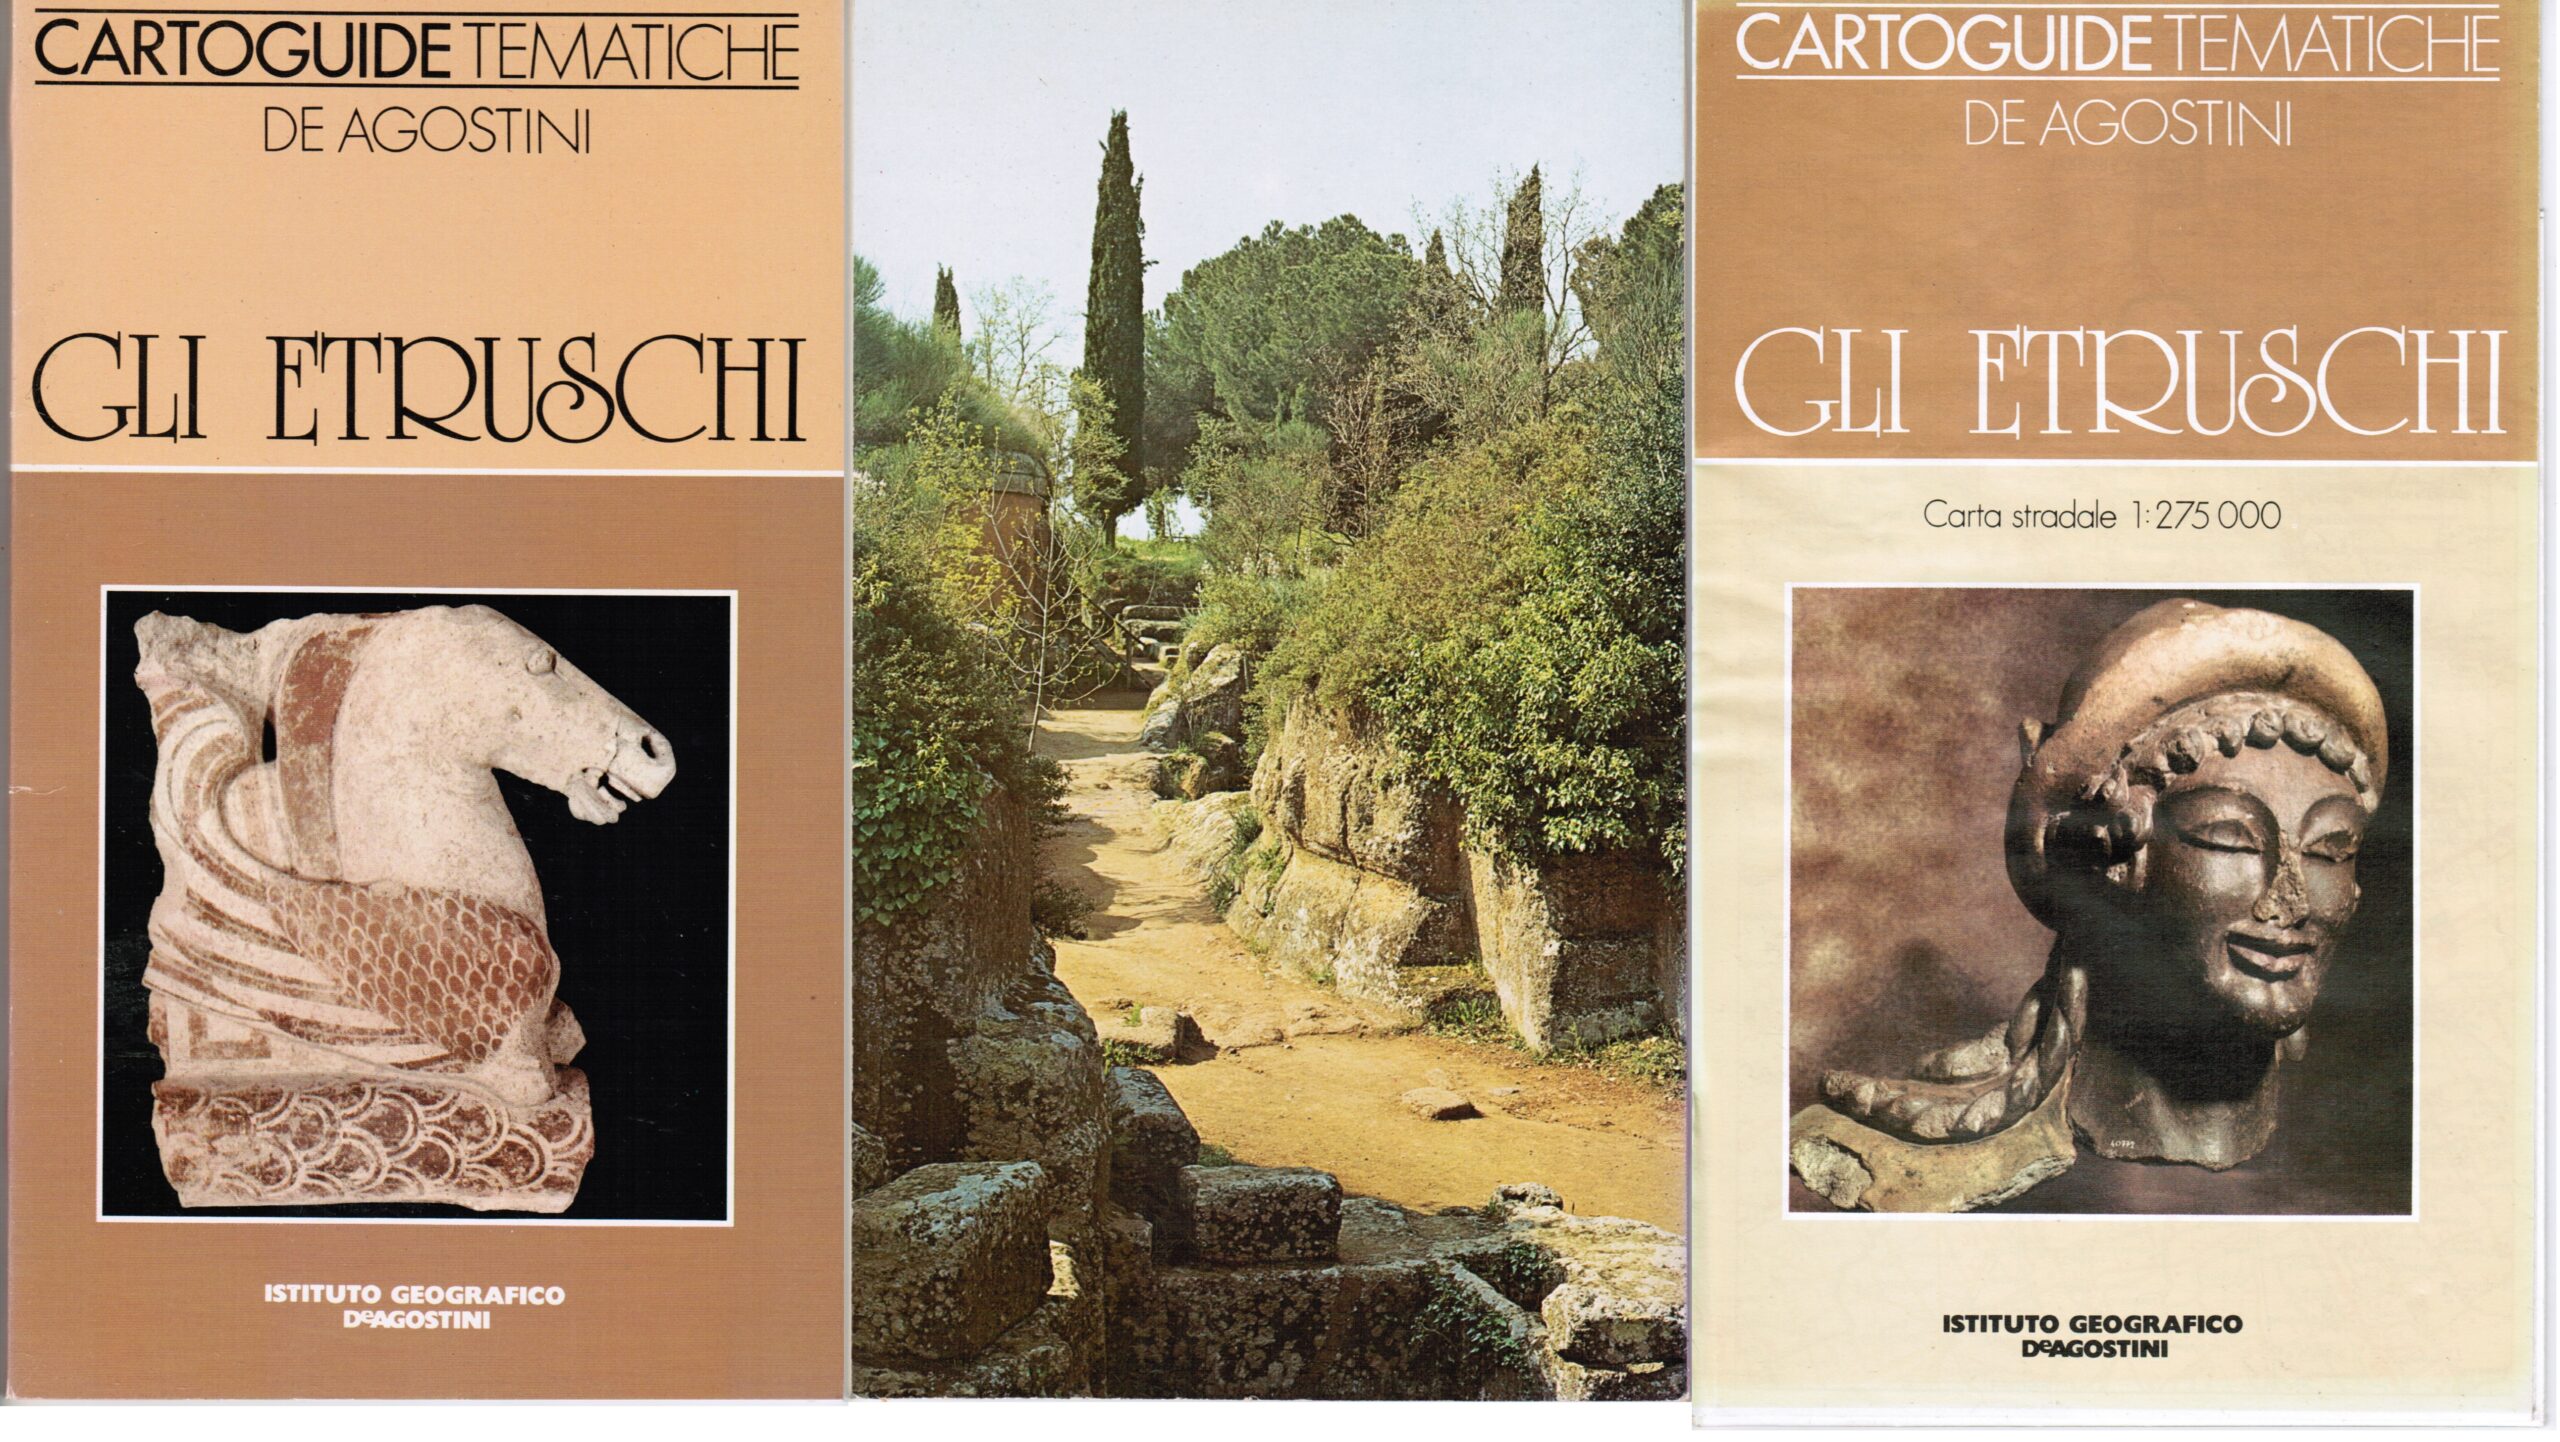 Cartoguide Tematiche Gli Etruschi Editore Deagostini ISBN 88 402 4820 X